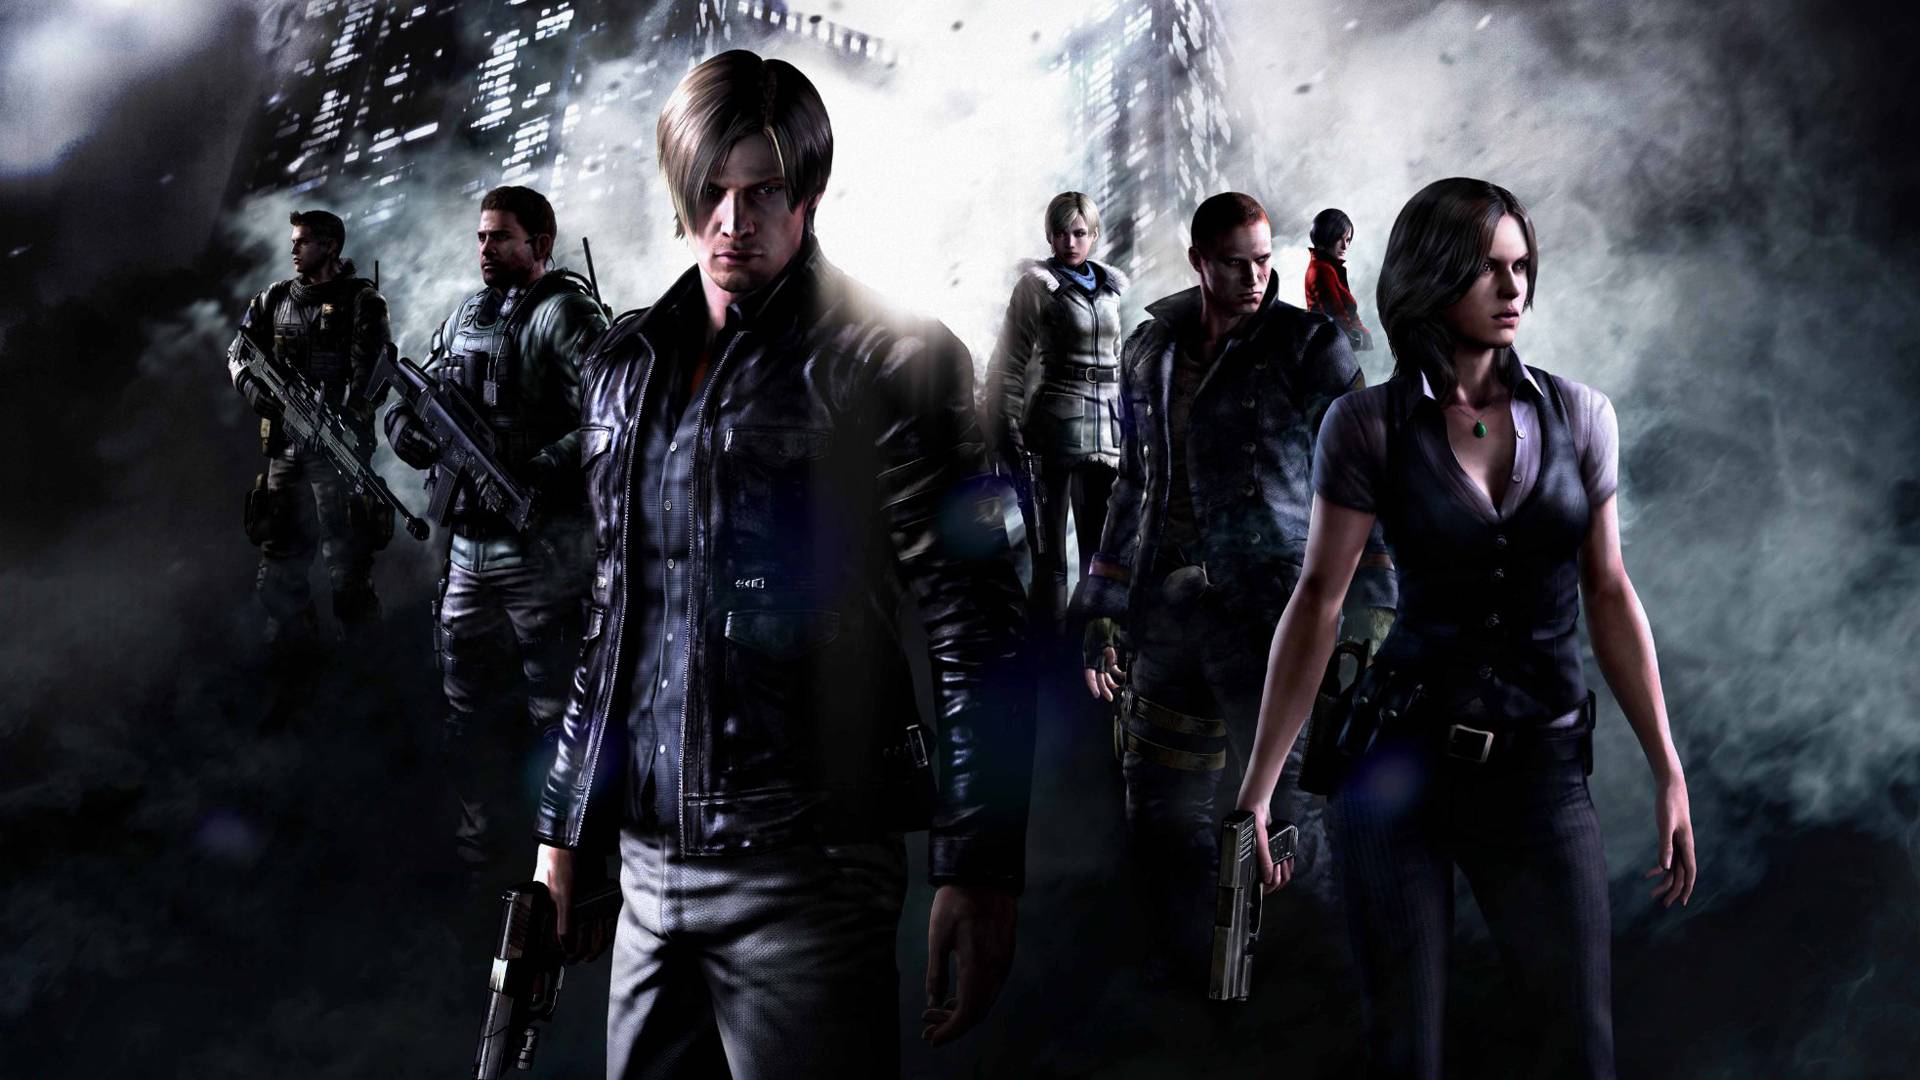 Resident Evil 6 Anthology